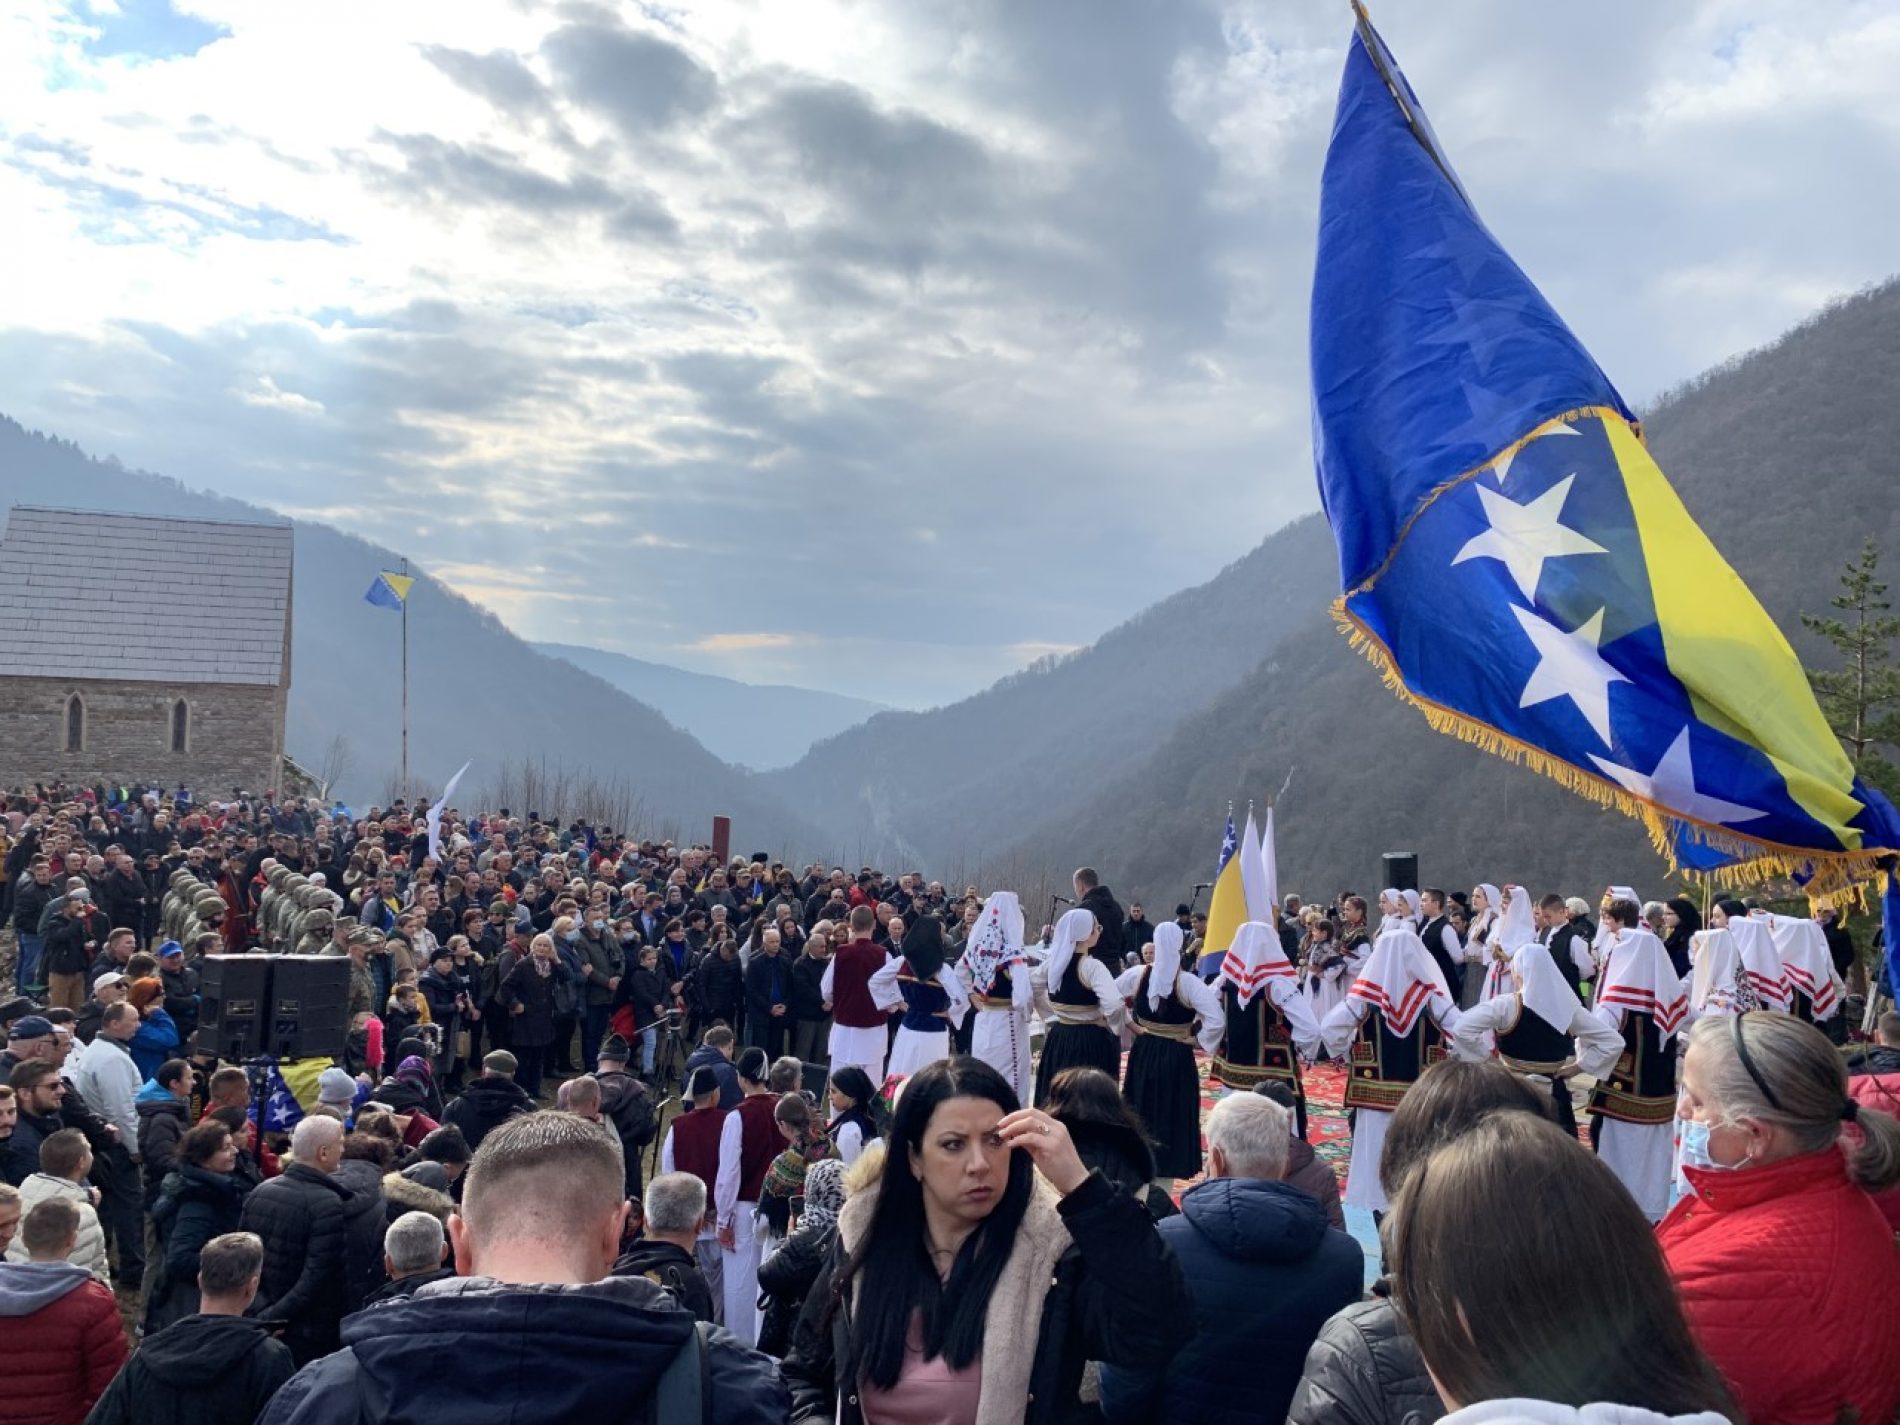 Na Bobovcu obilježen Dan državnosti Bosne i Hercegovine: “Svi ljudi mogu i trebaju živjeti zajedno”